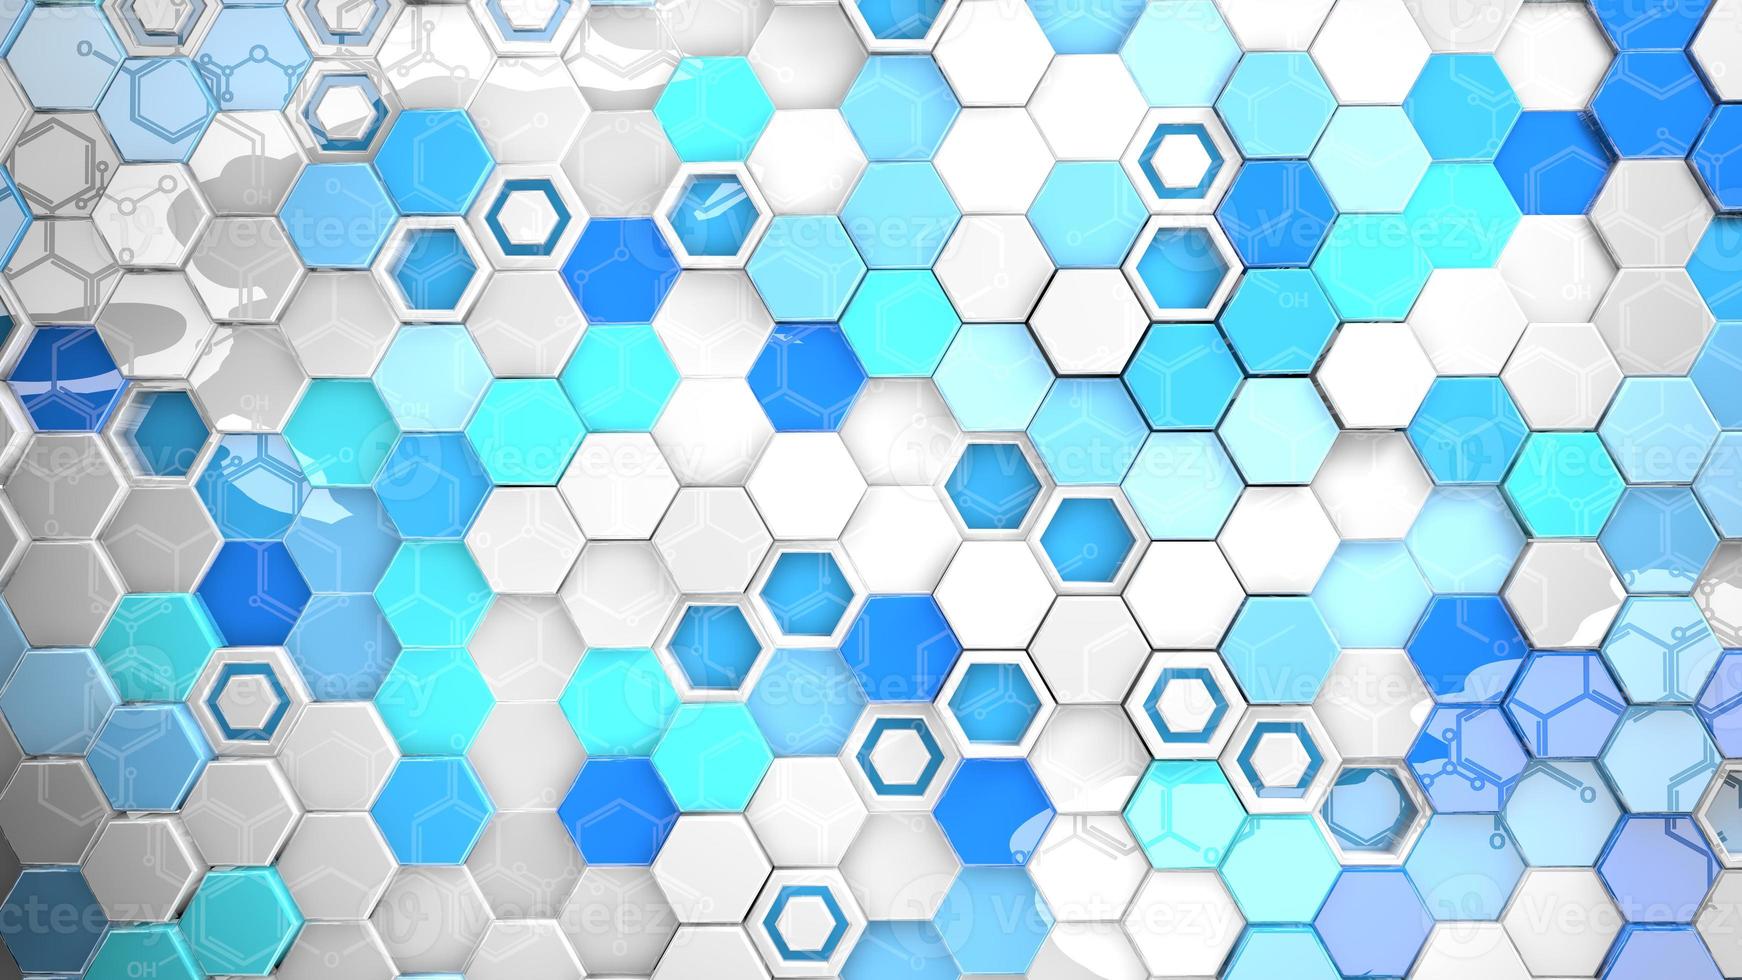 strukturbakgrund av blå, cyan och vita reflekterande hexagoner i slumpmässig position som återspeglar en kemisk formel foto